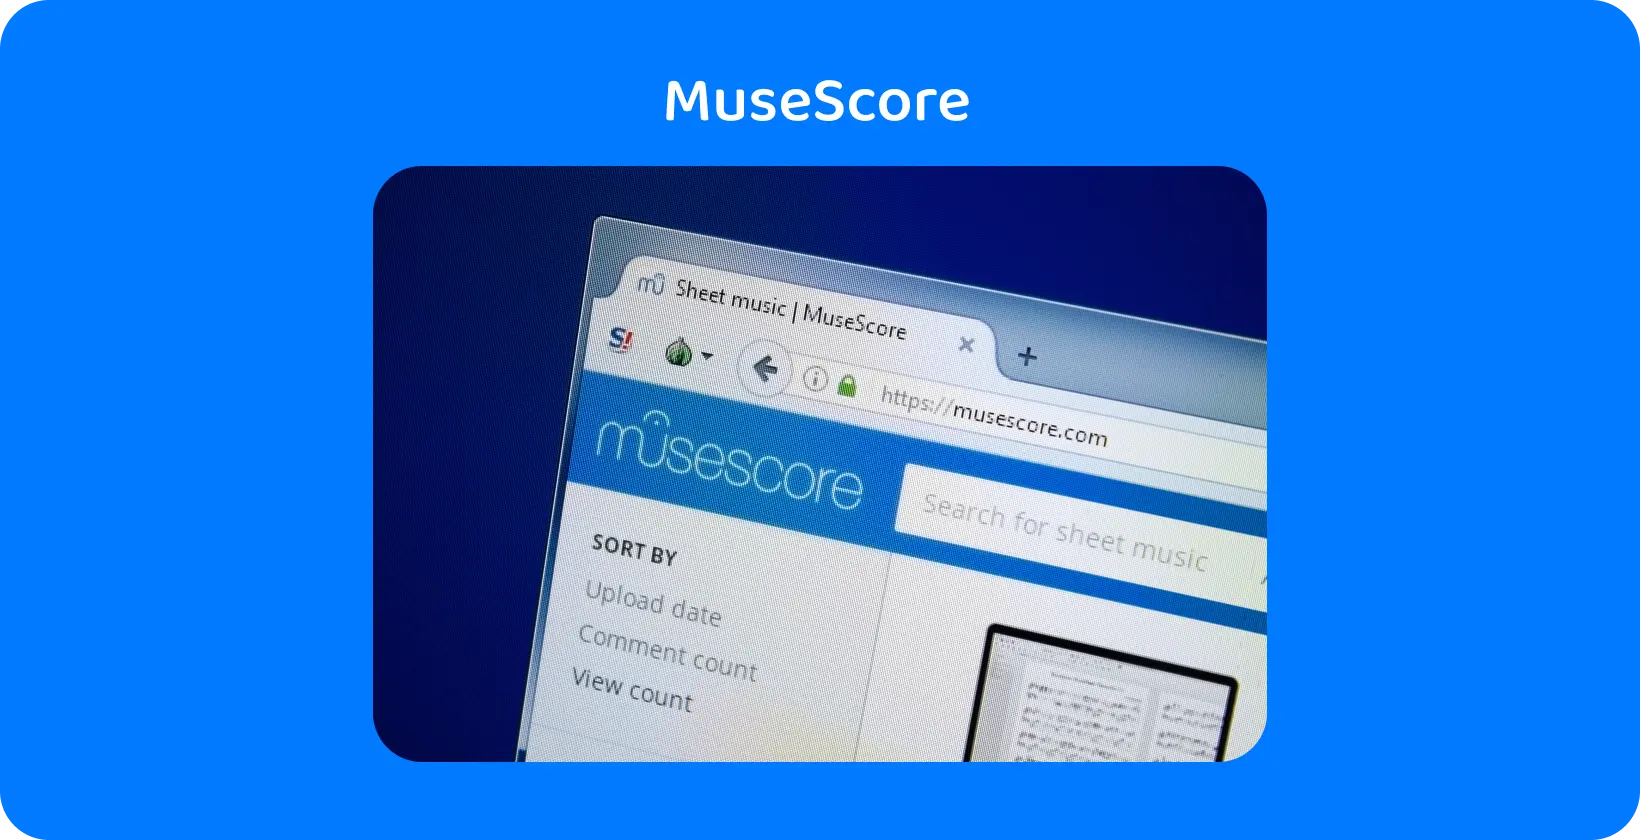 لقطة مقربة لموقع الويب الخاص MuseScore ، مع تسليط الضوء على البحث عن الموسيقى الورقية ، وهي أداة رئيسية لتوجيه النسخ الصوتي.